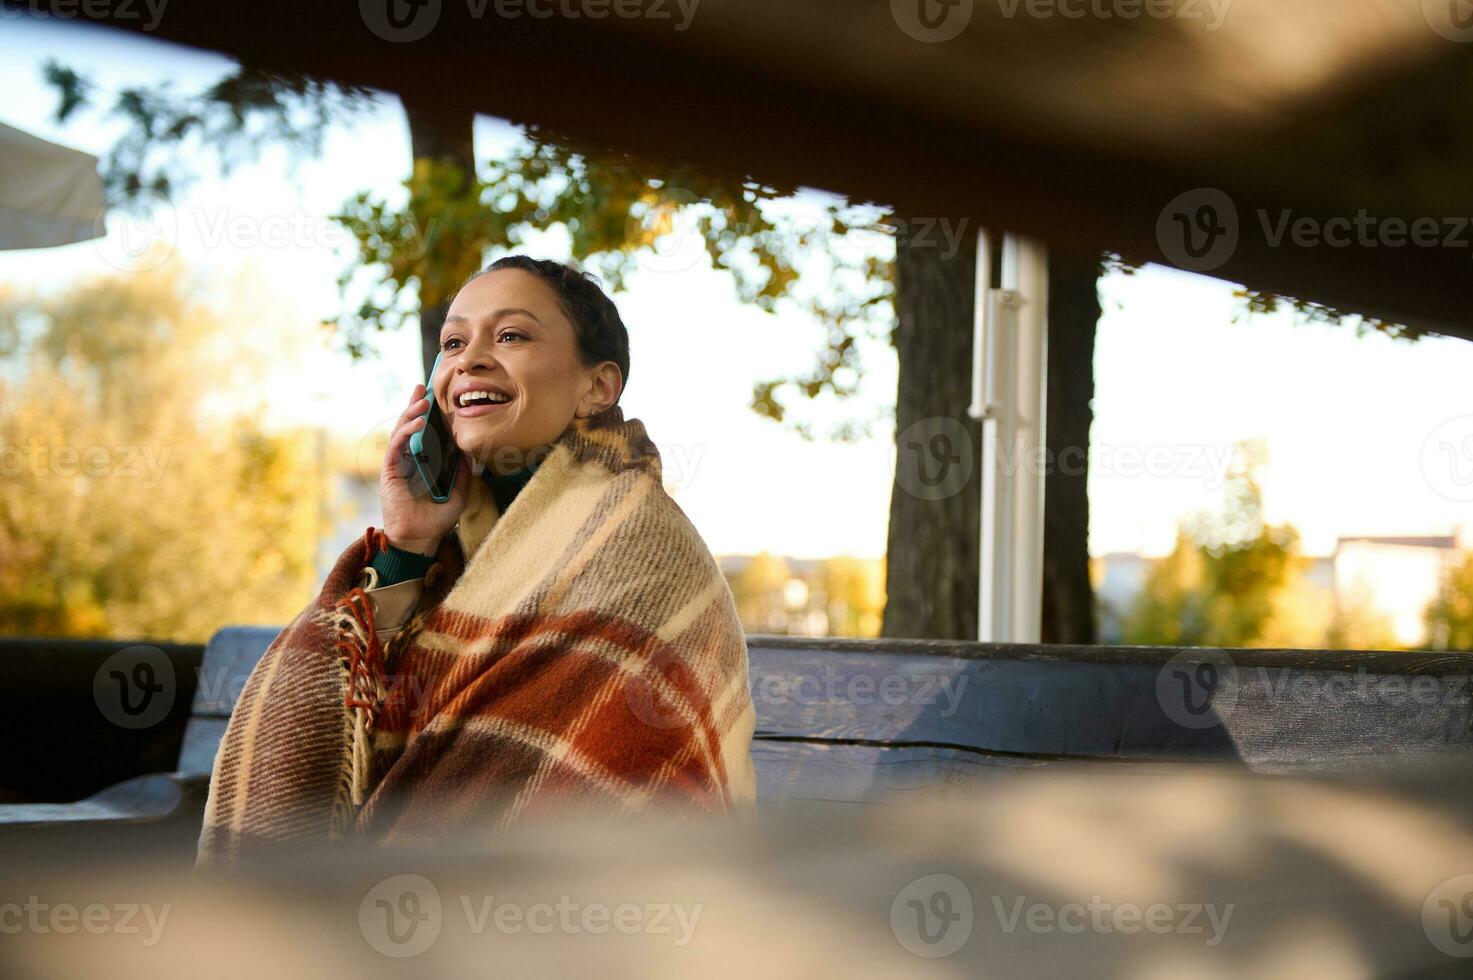 ver mediante de madera registros de banco a sonriente bonito mujer mirando lejos mientras hablando en móvil teléfono, sentado en de madera banco envuelto en acogedor a cuadros de lana cobija acuerdo calentar en frio otoño día foto